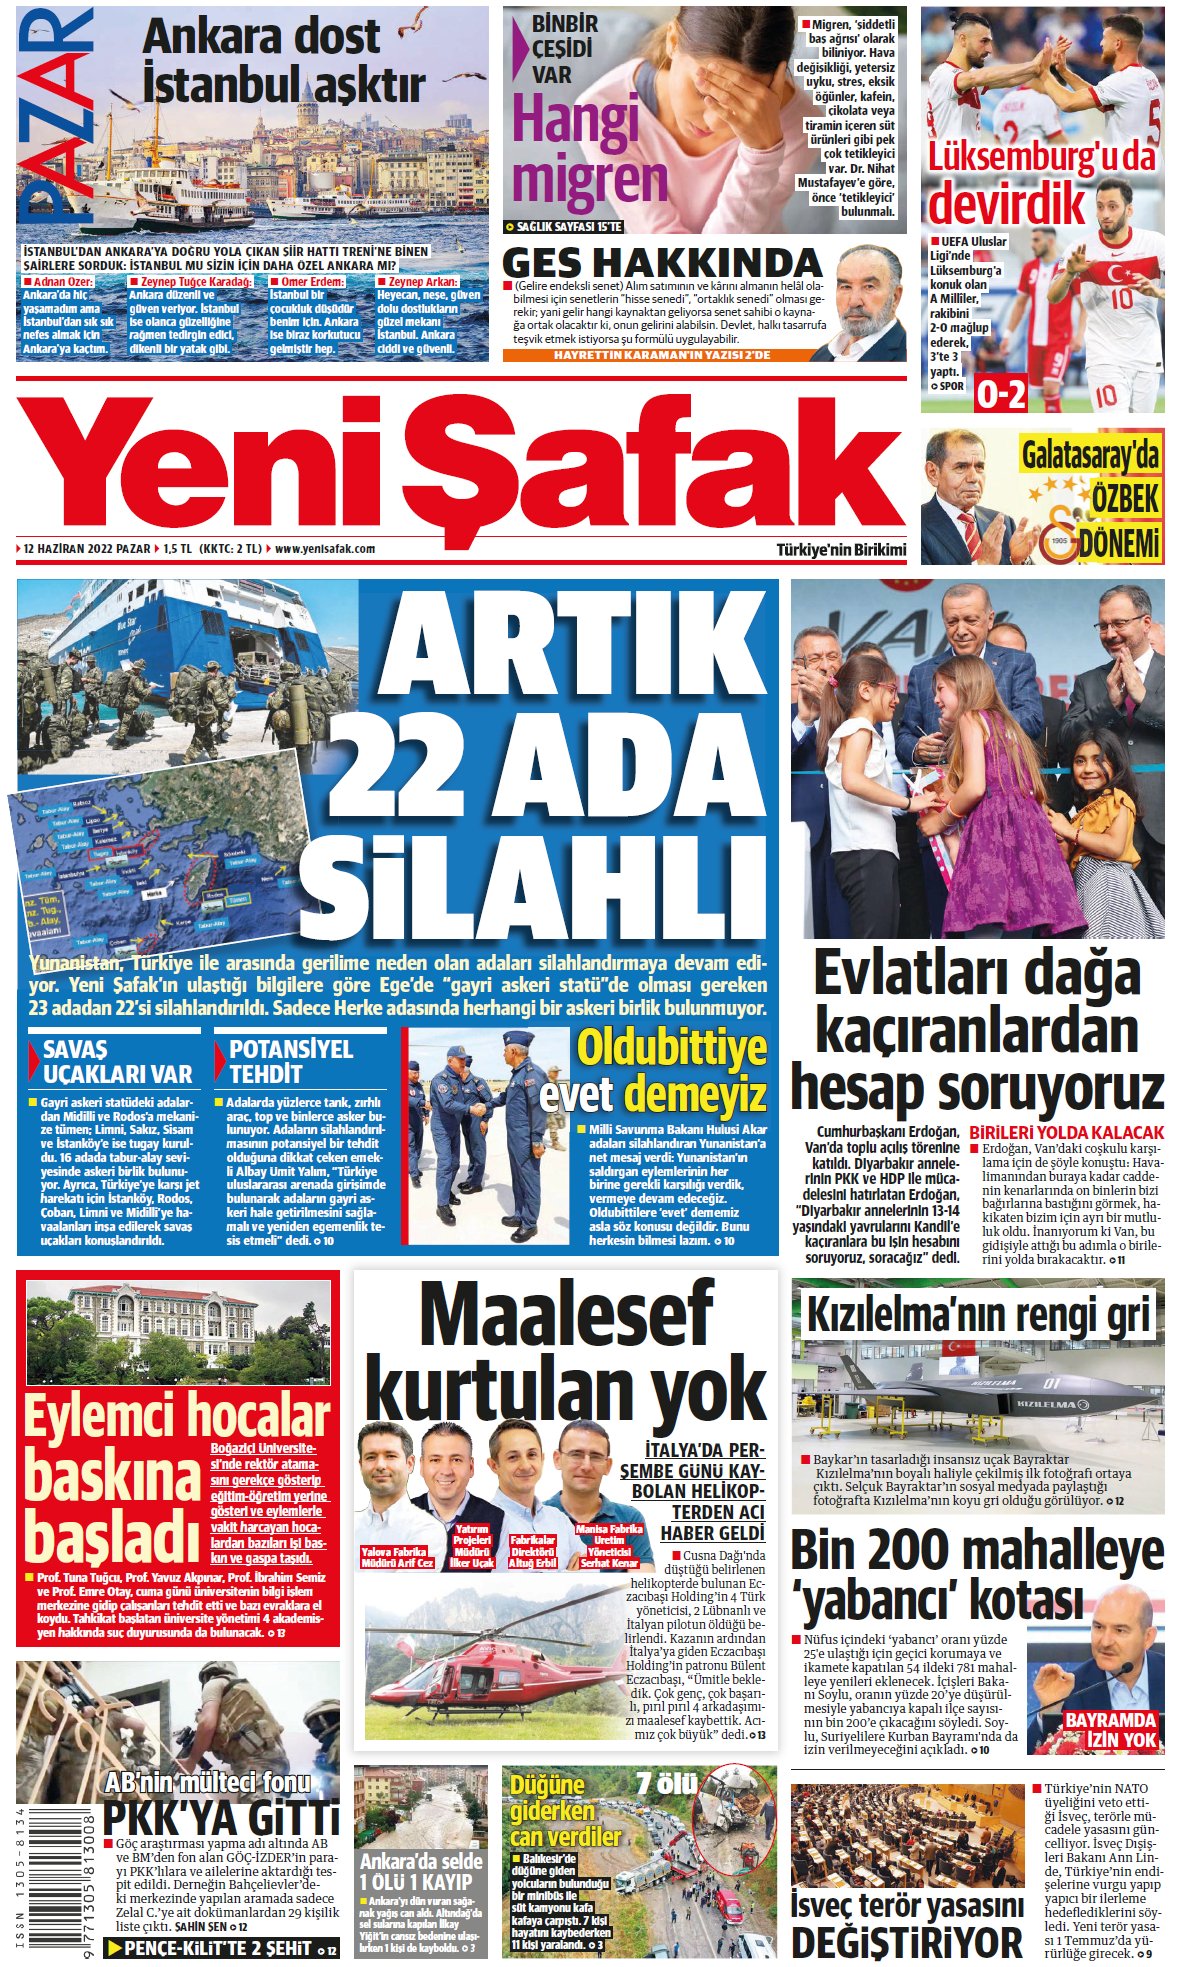 Το πρωτοσέλιδο της Yeni Safak